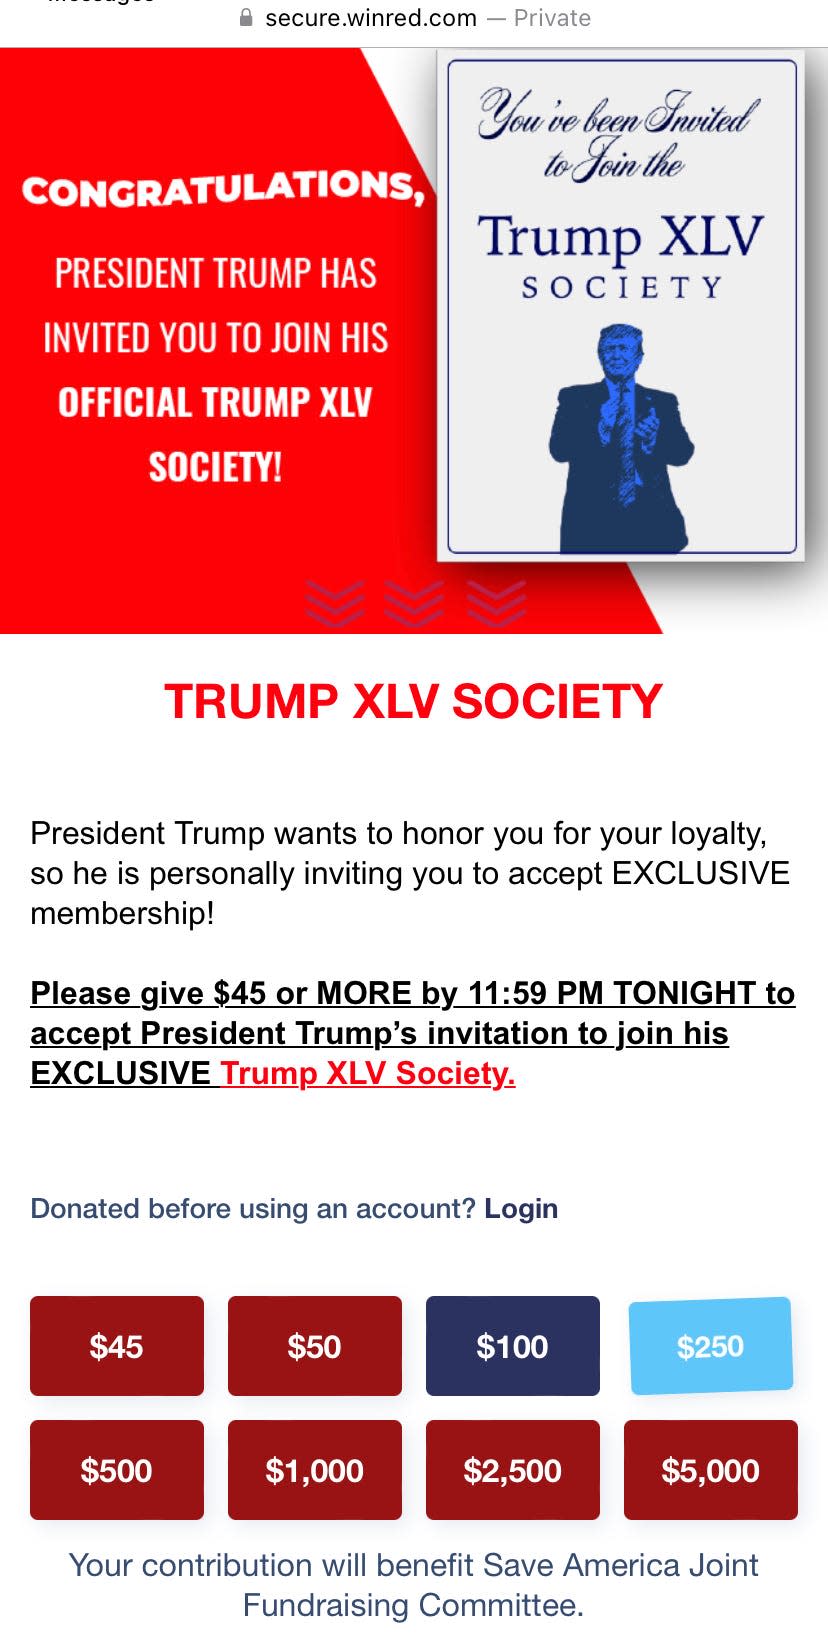 Trump XLV Society